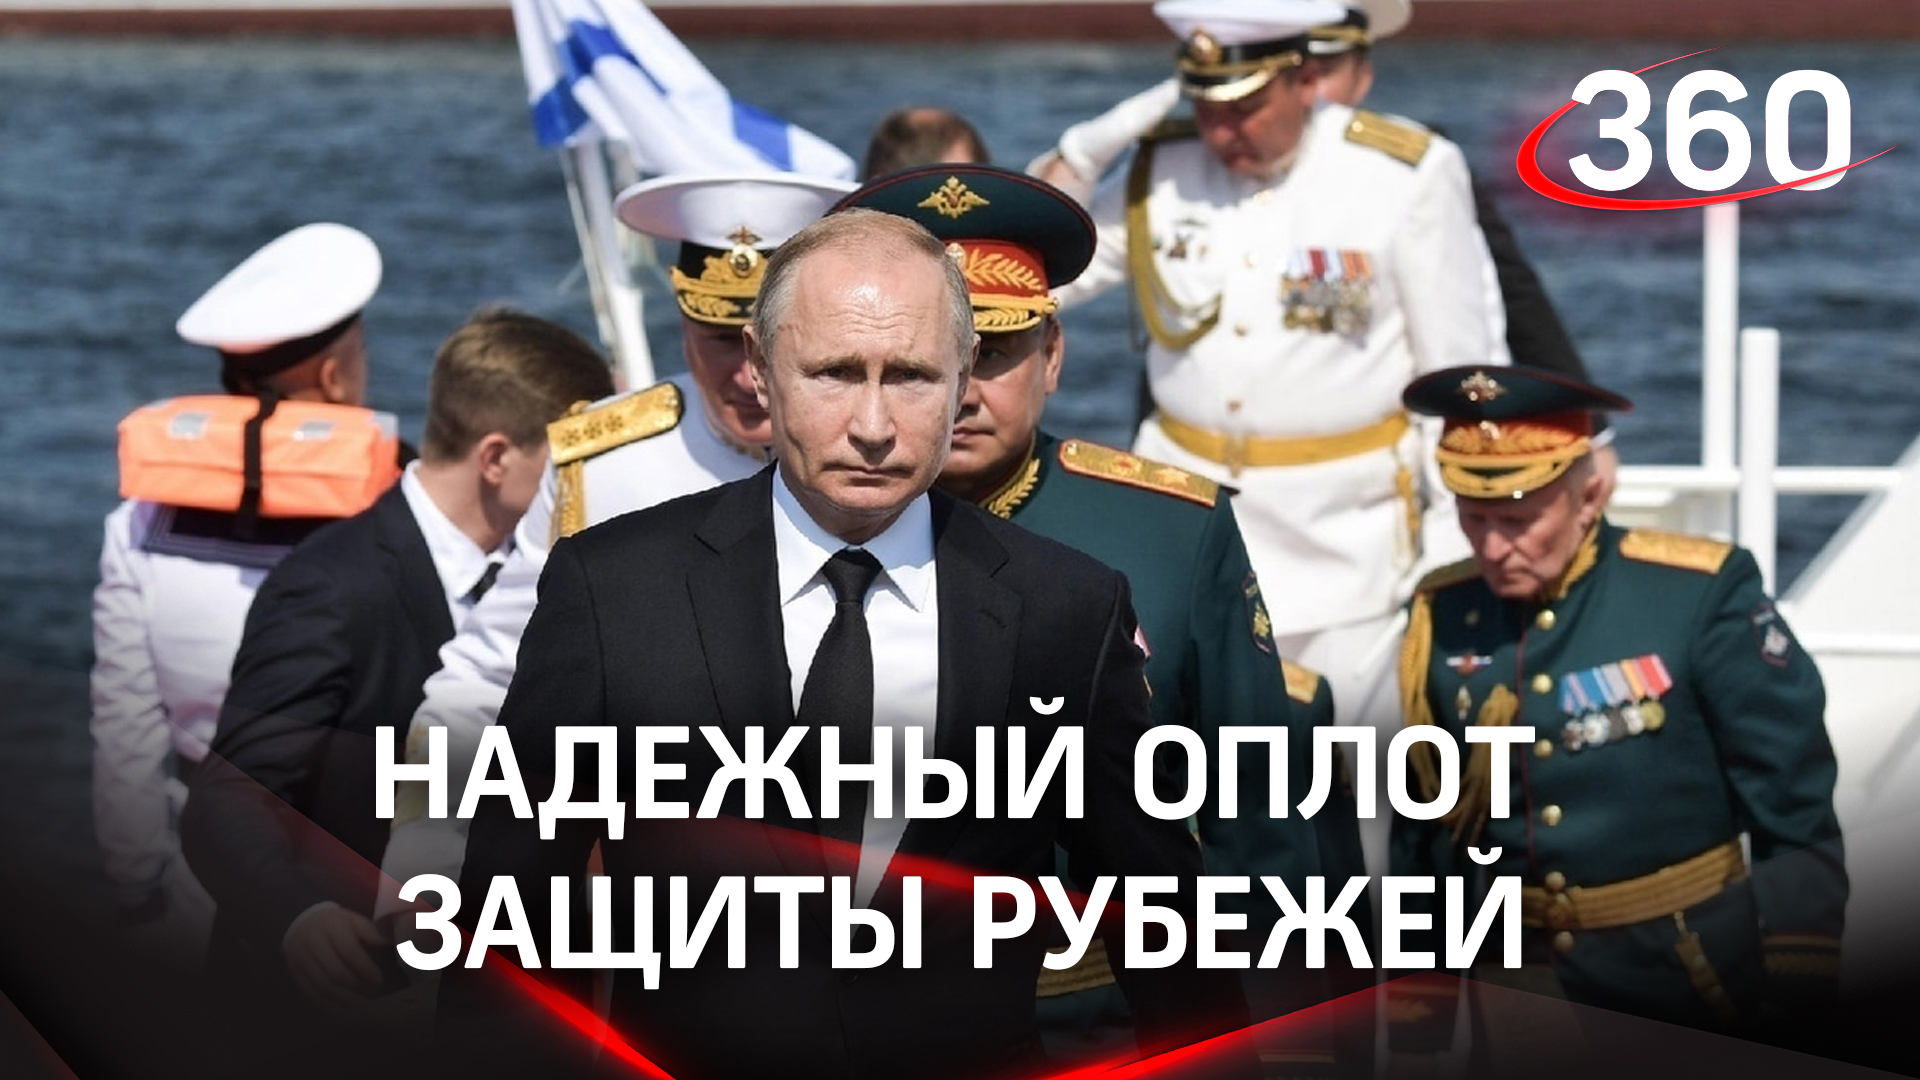 Надёжный оплот защиты рубежей - Путин принял Главный военно-морской парад в честь Дня ВМФ